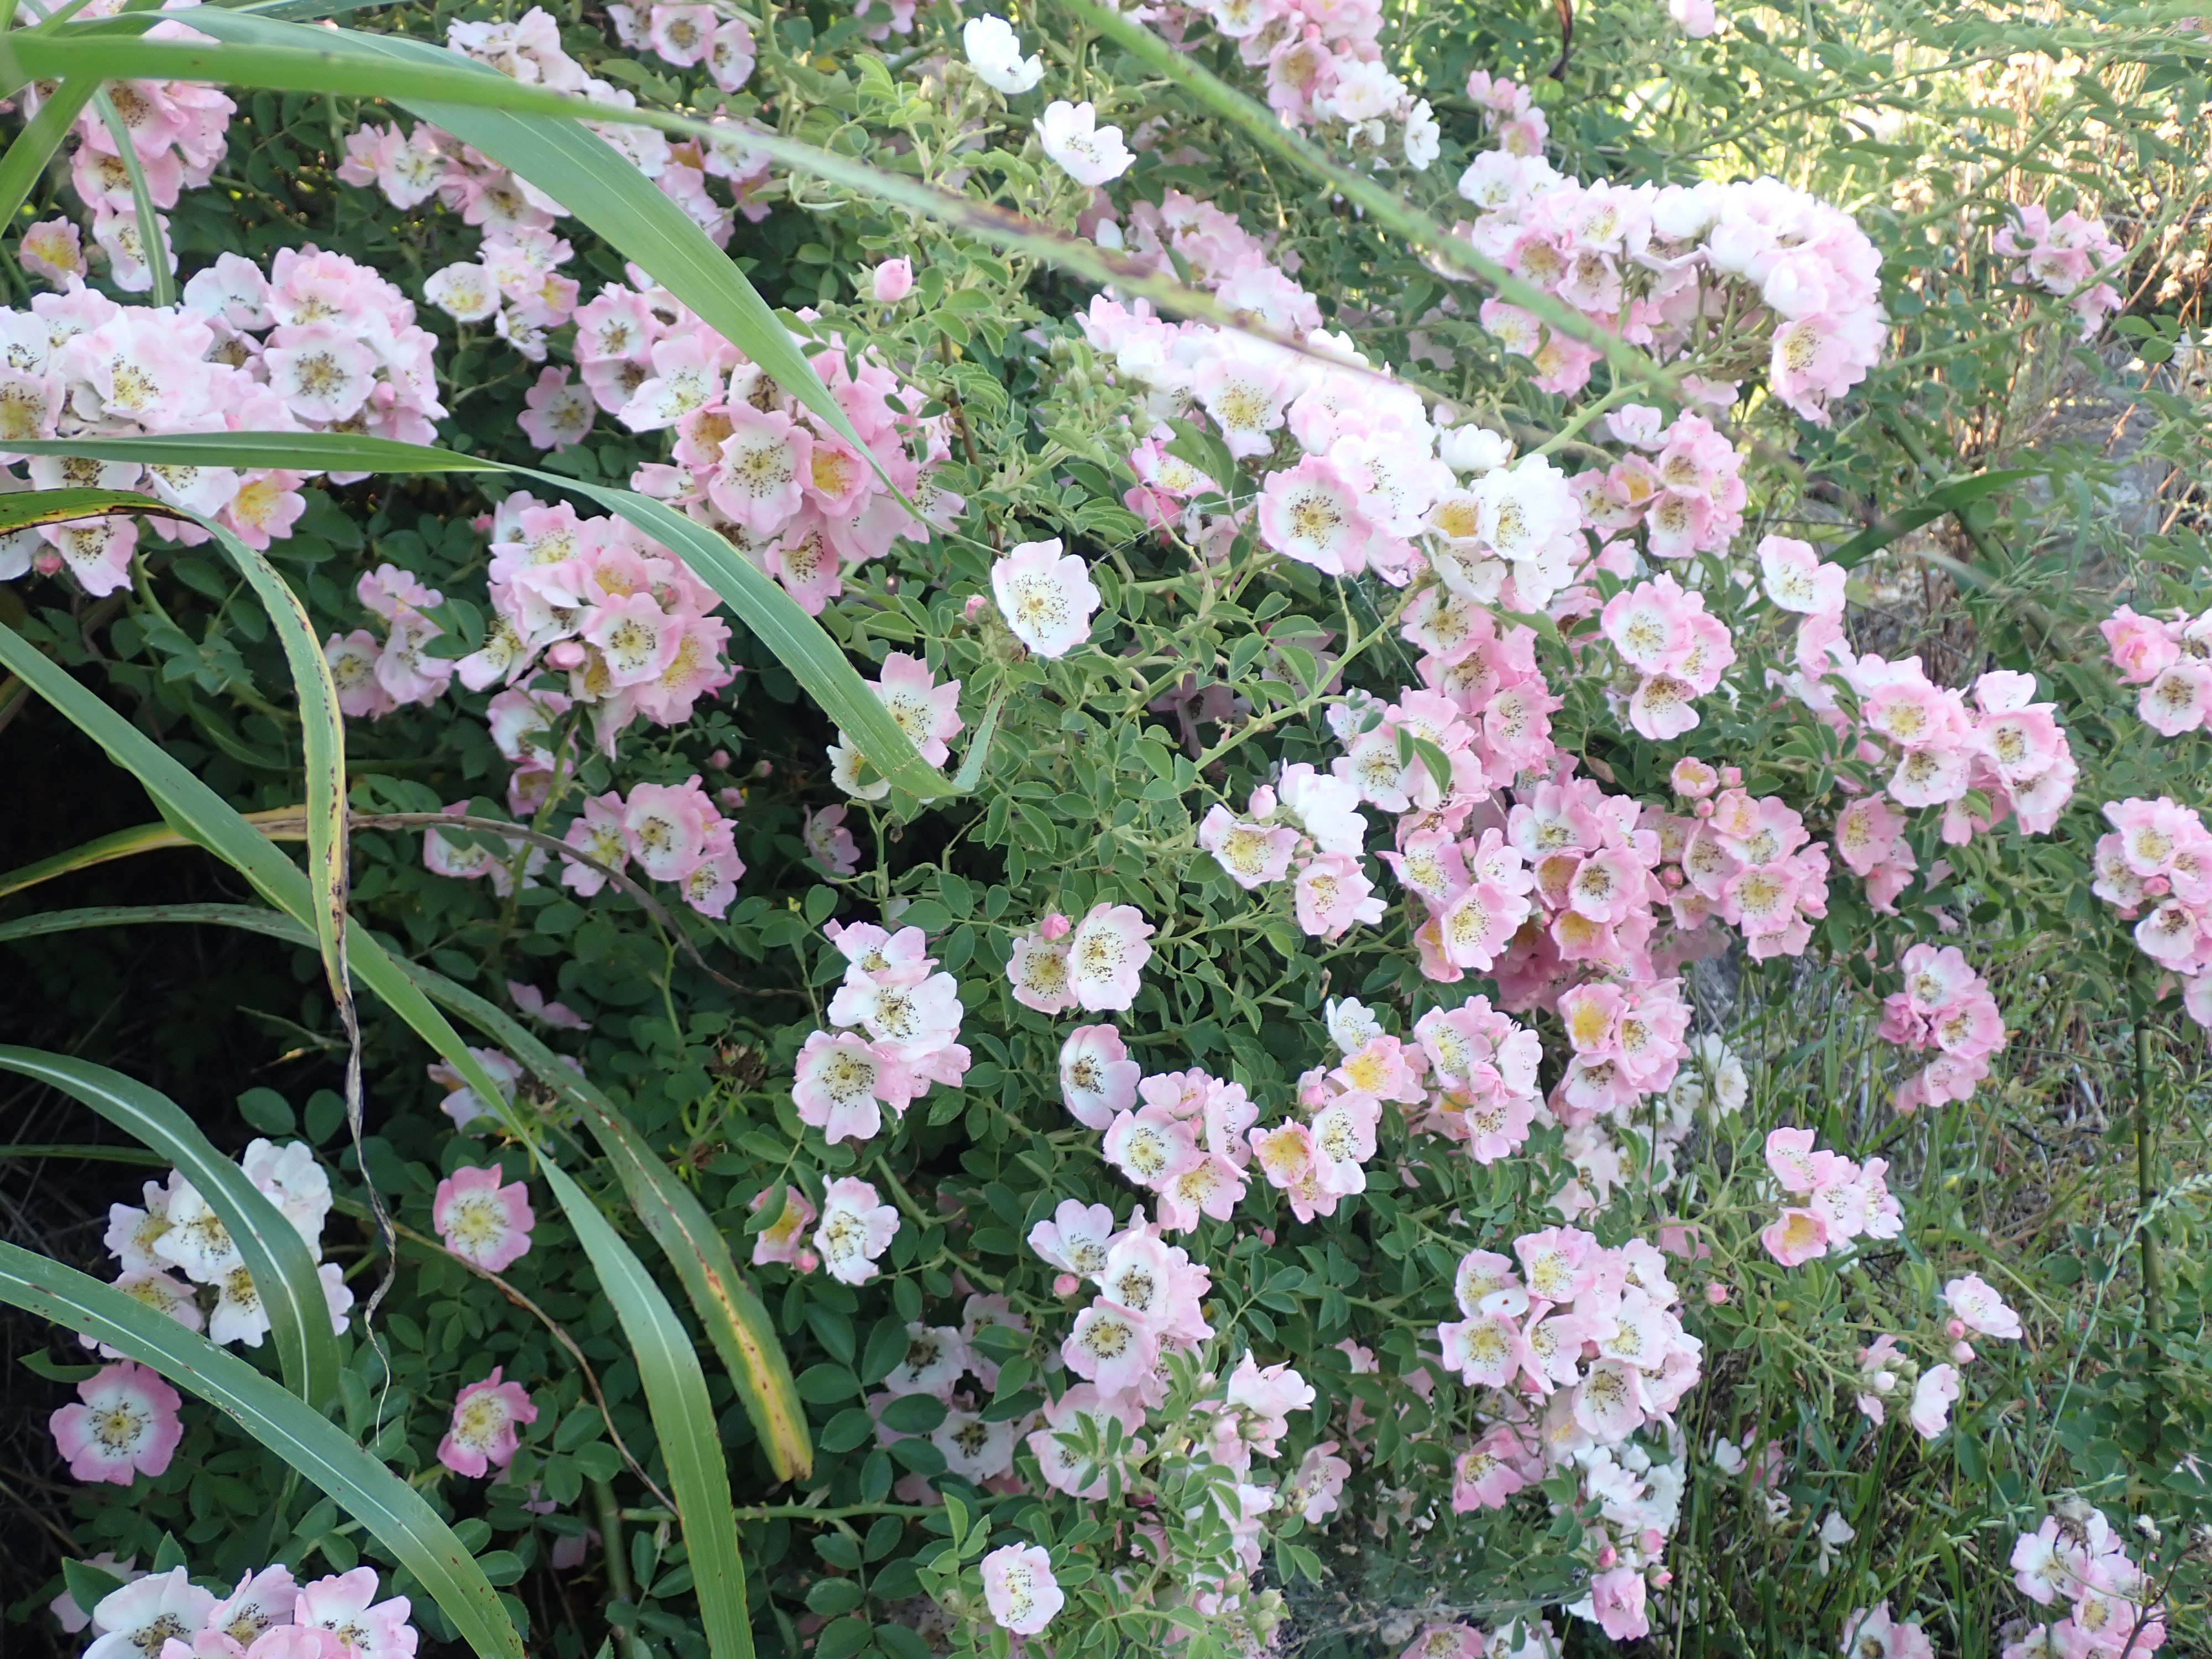 ツクシイバラ | Rosa multiflora var. adenochaeta